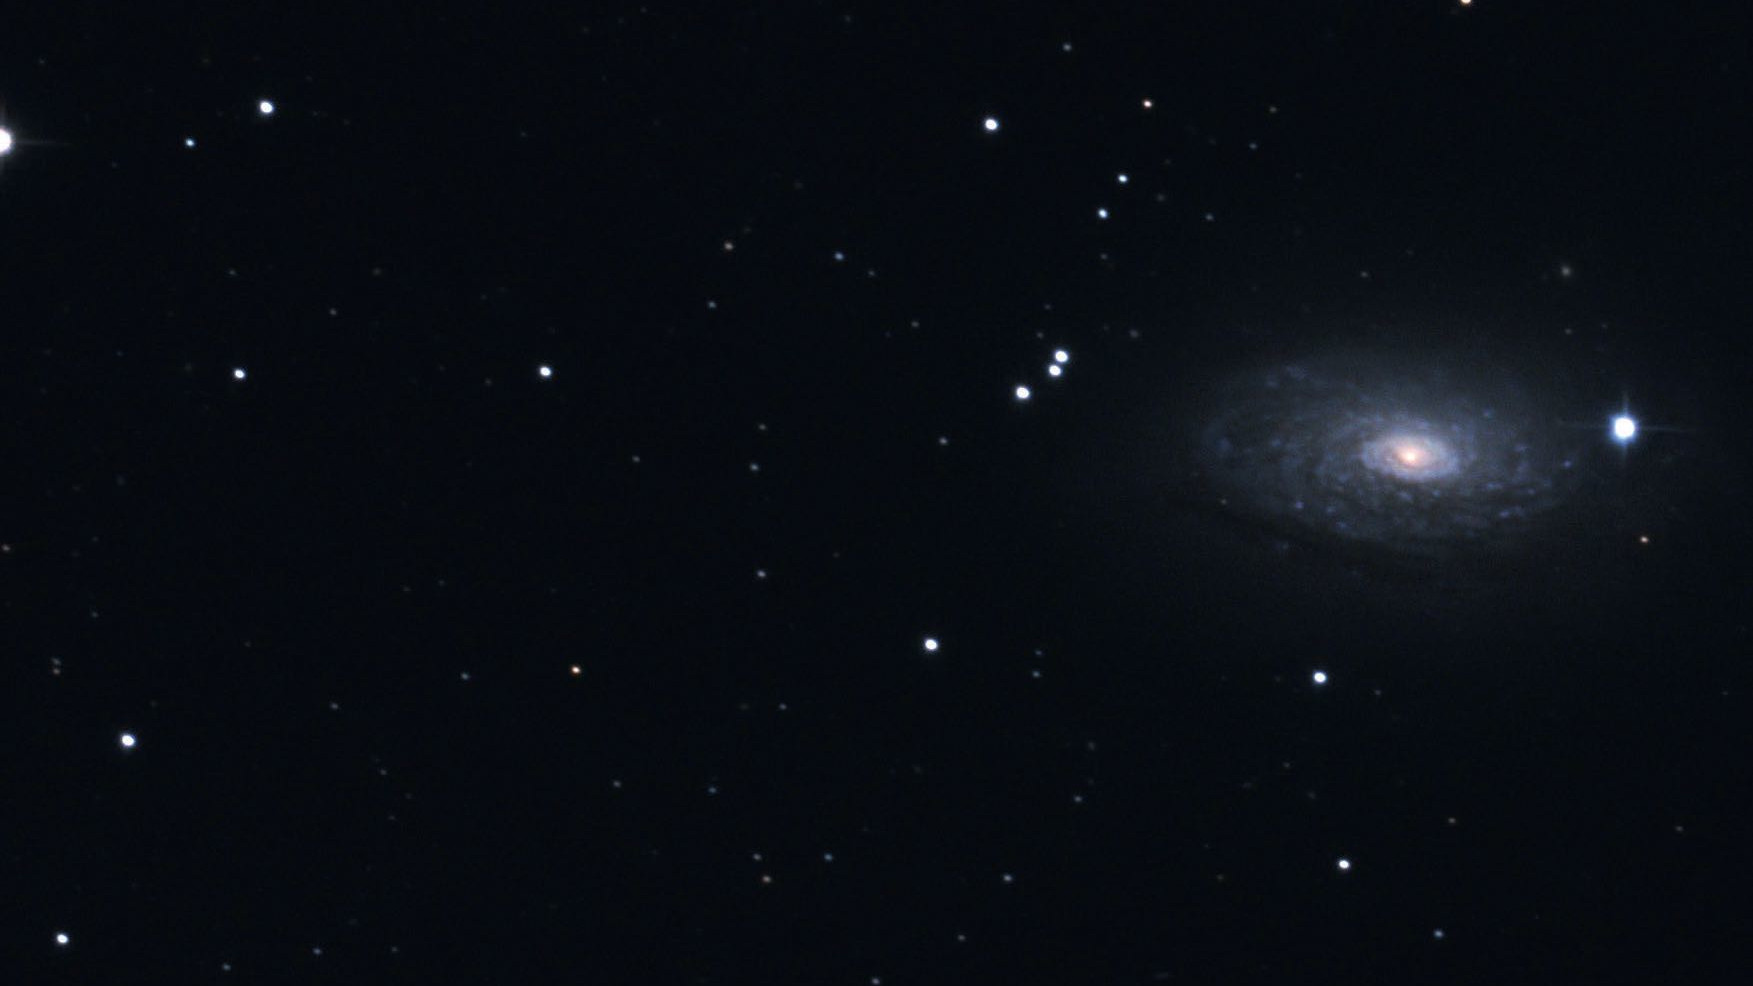 En los binoculares casi parecen una estrella binaria. Las características galácticas de M63 se distinguen mucho mejor en las fotos. Marcus Degenkolbe